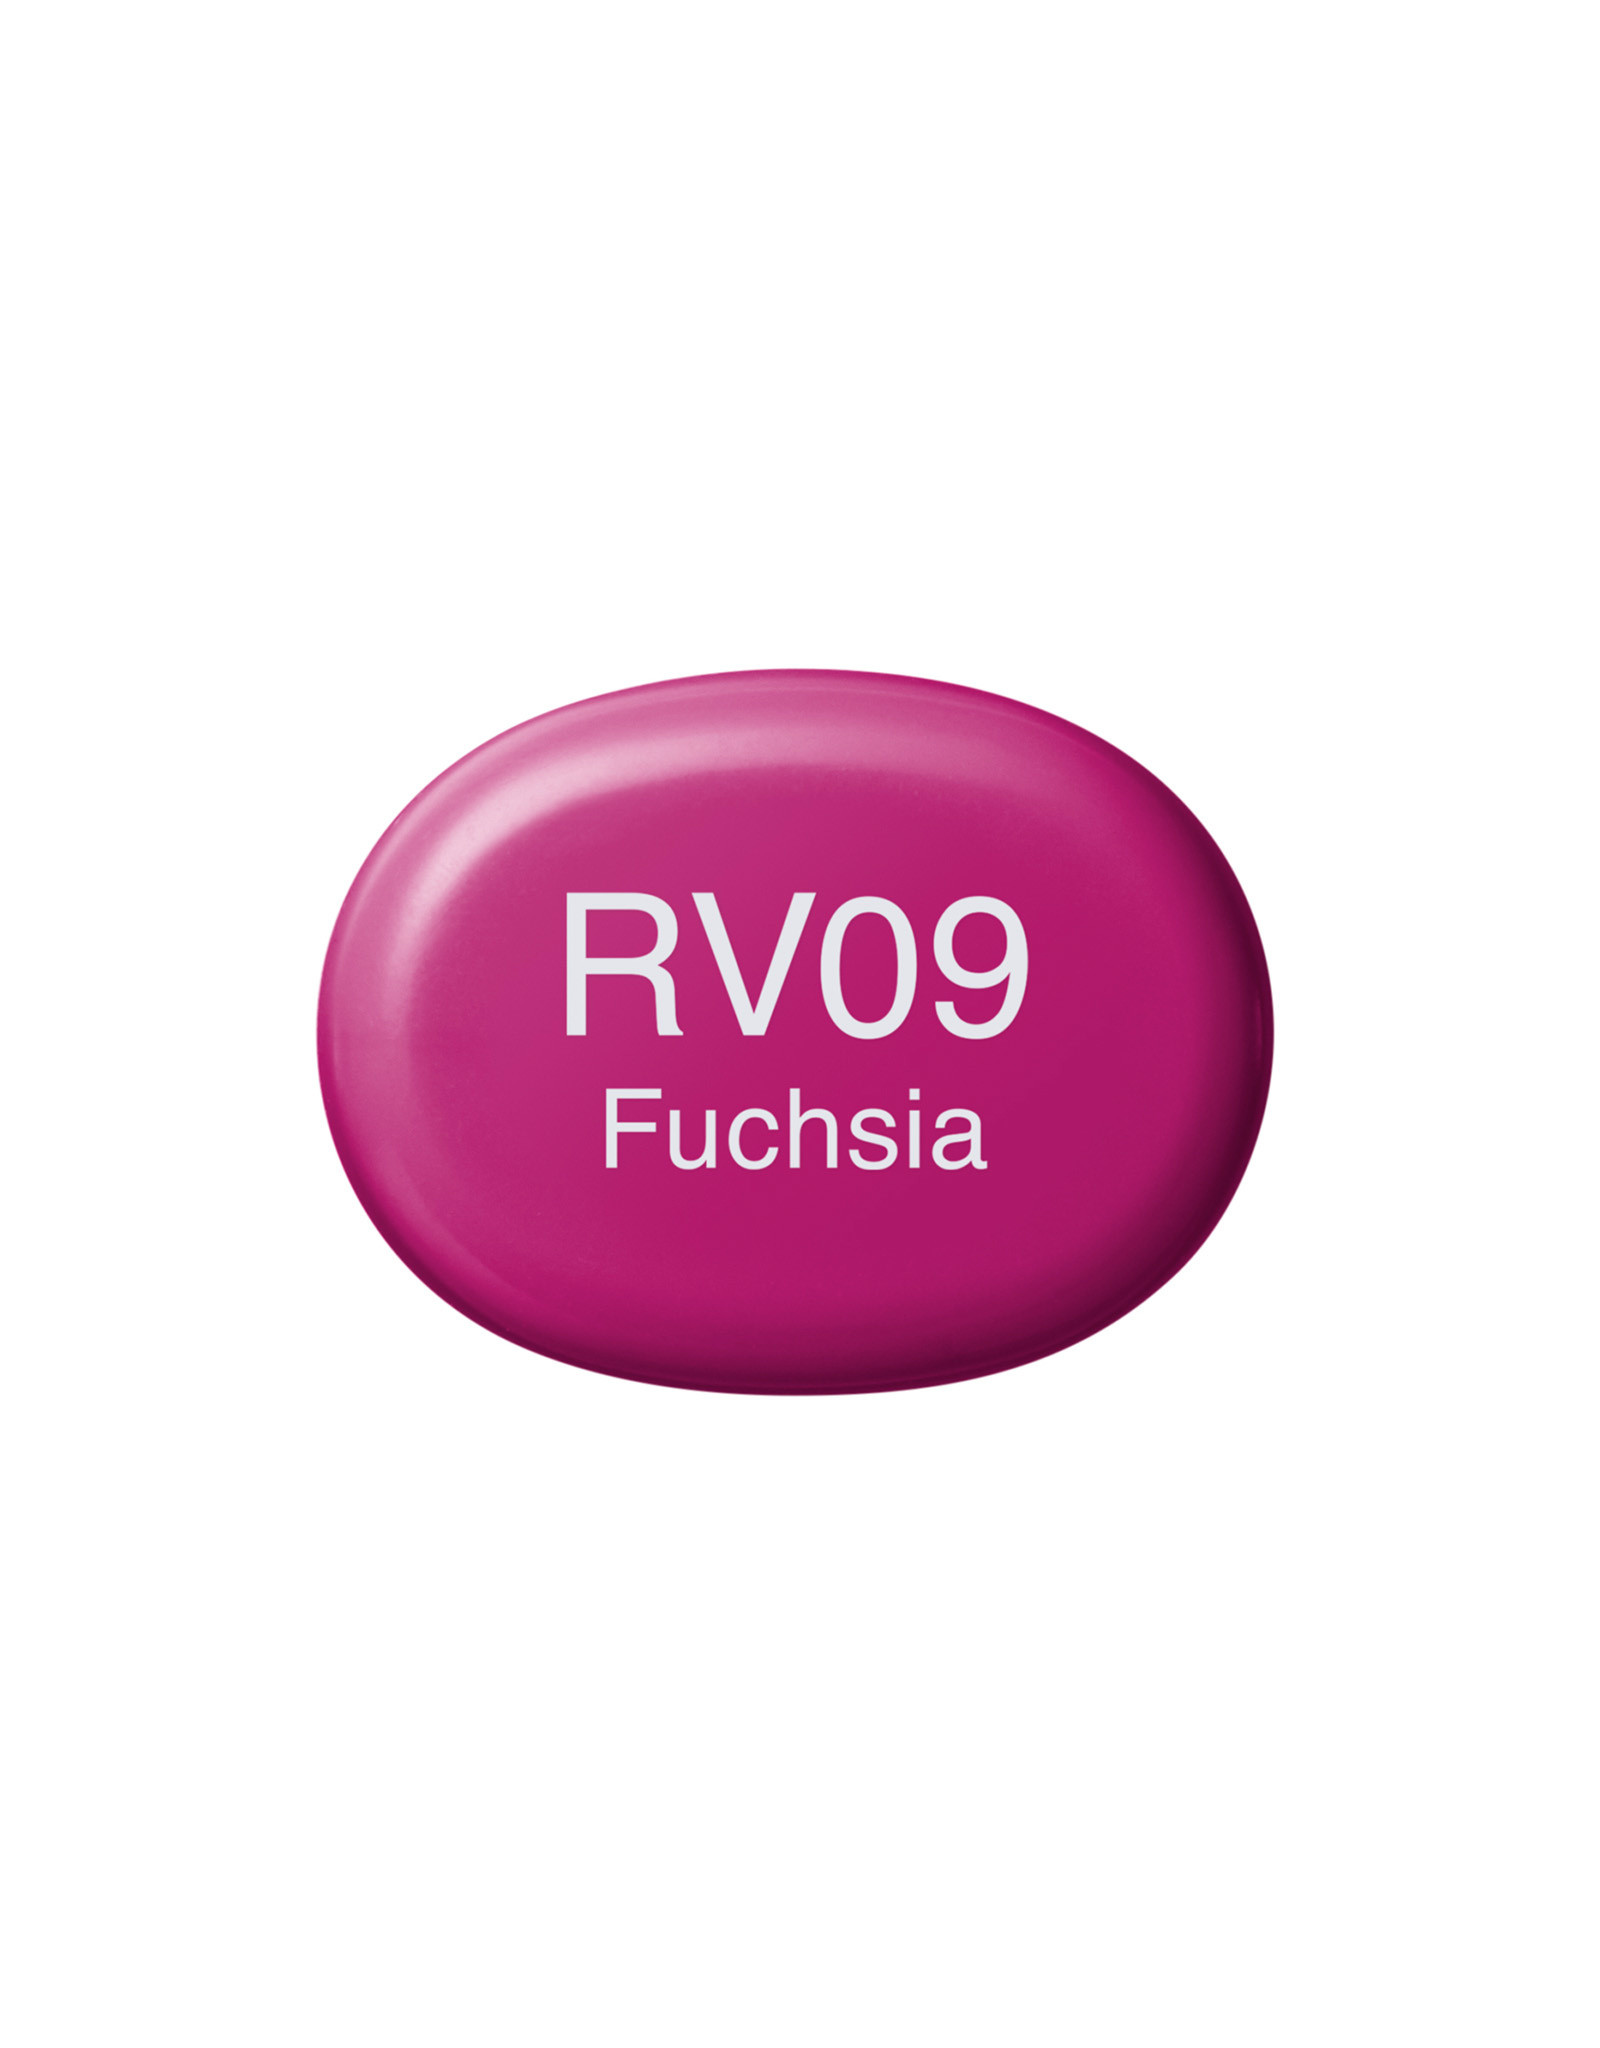 COPIC COPIC Sketch Marker RV09 Fuchsia